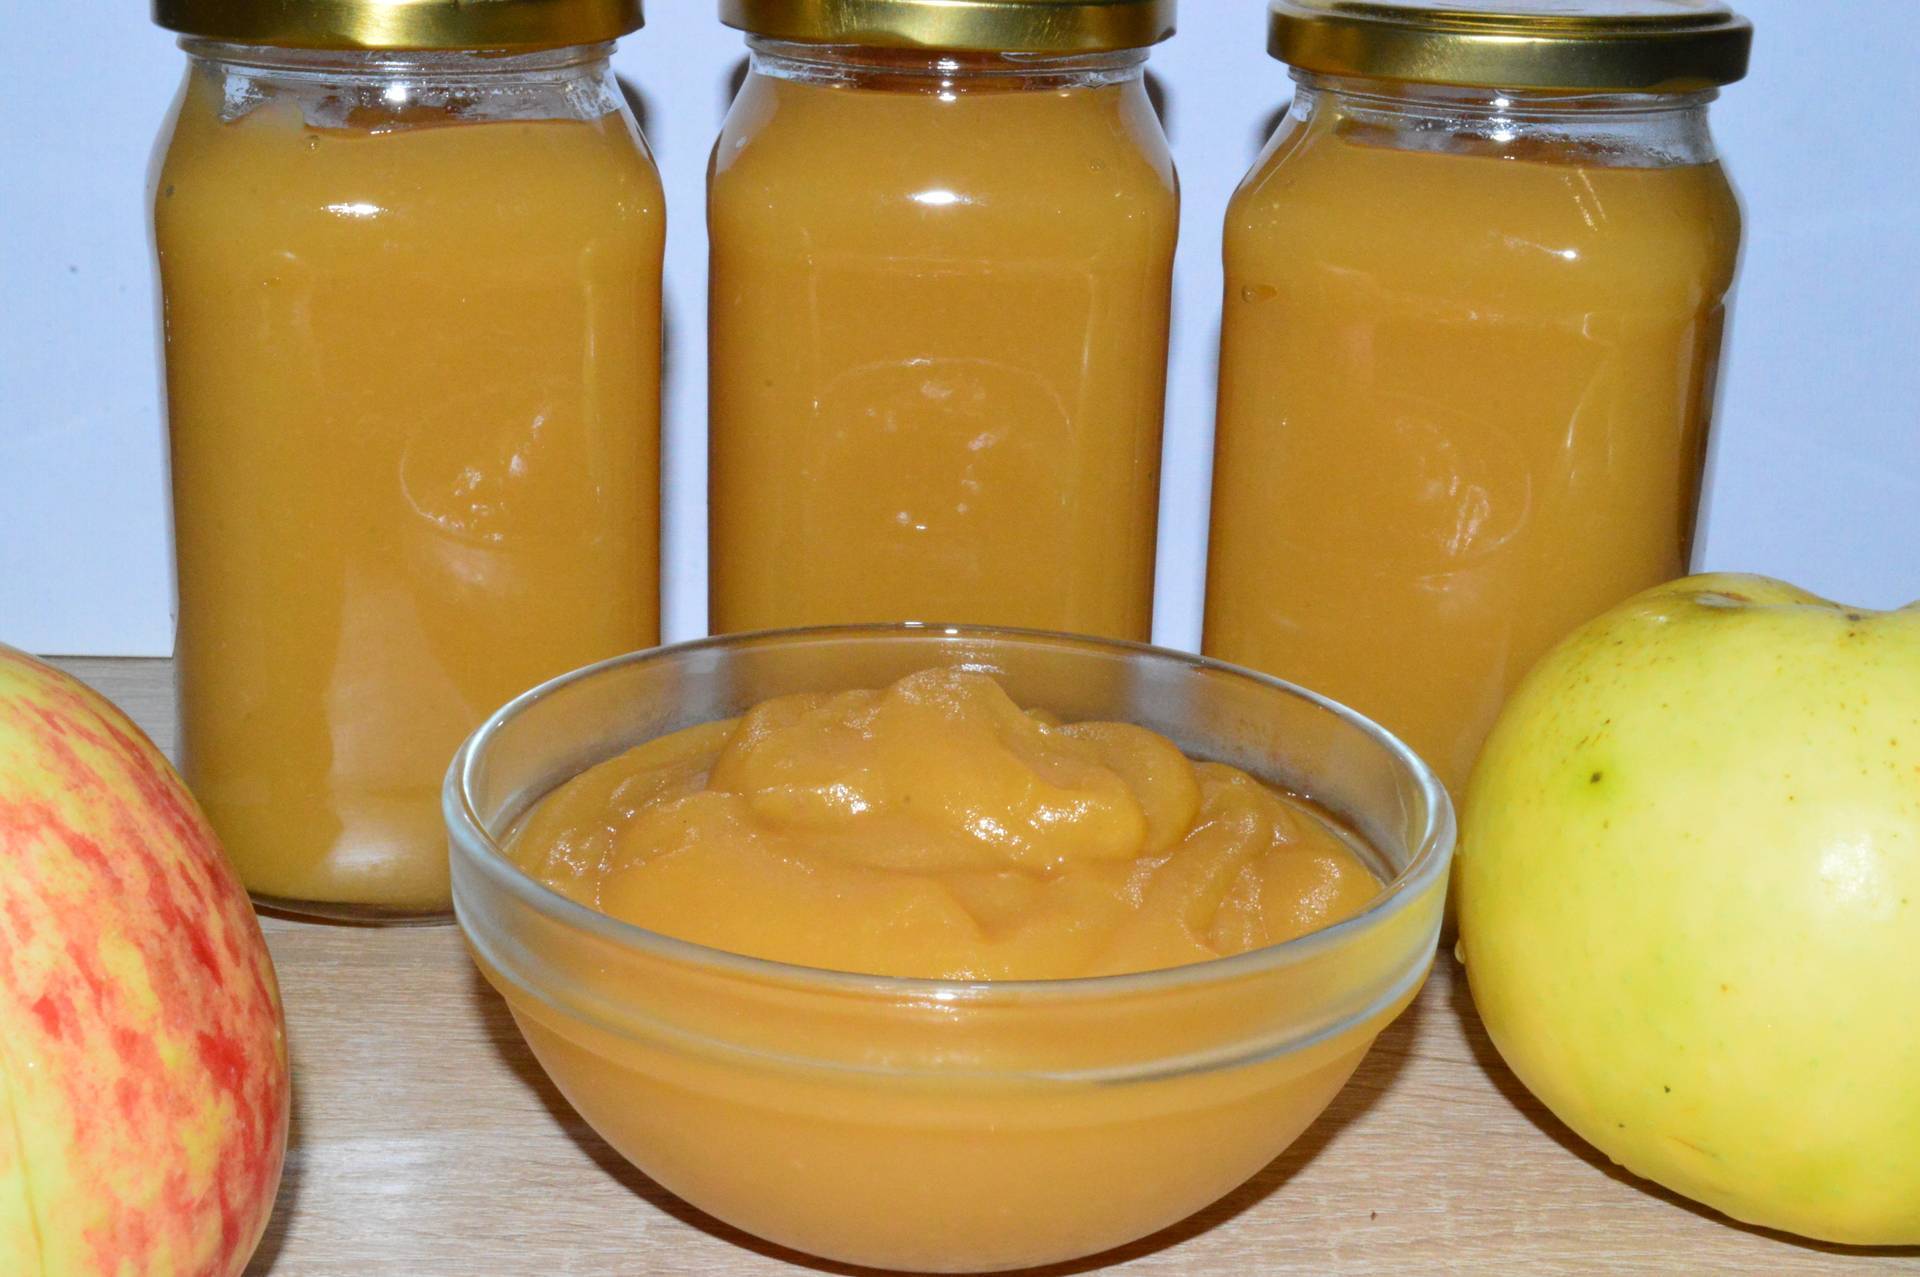 Как готовить яблочное пюре для прикорма грудничку в домашних условиях: рецепты, схема ввода в рацион ребенка свежих яблок